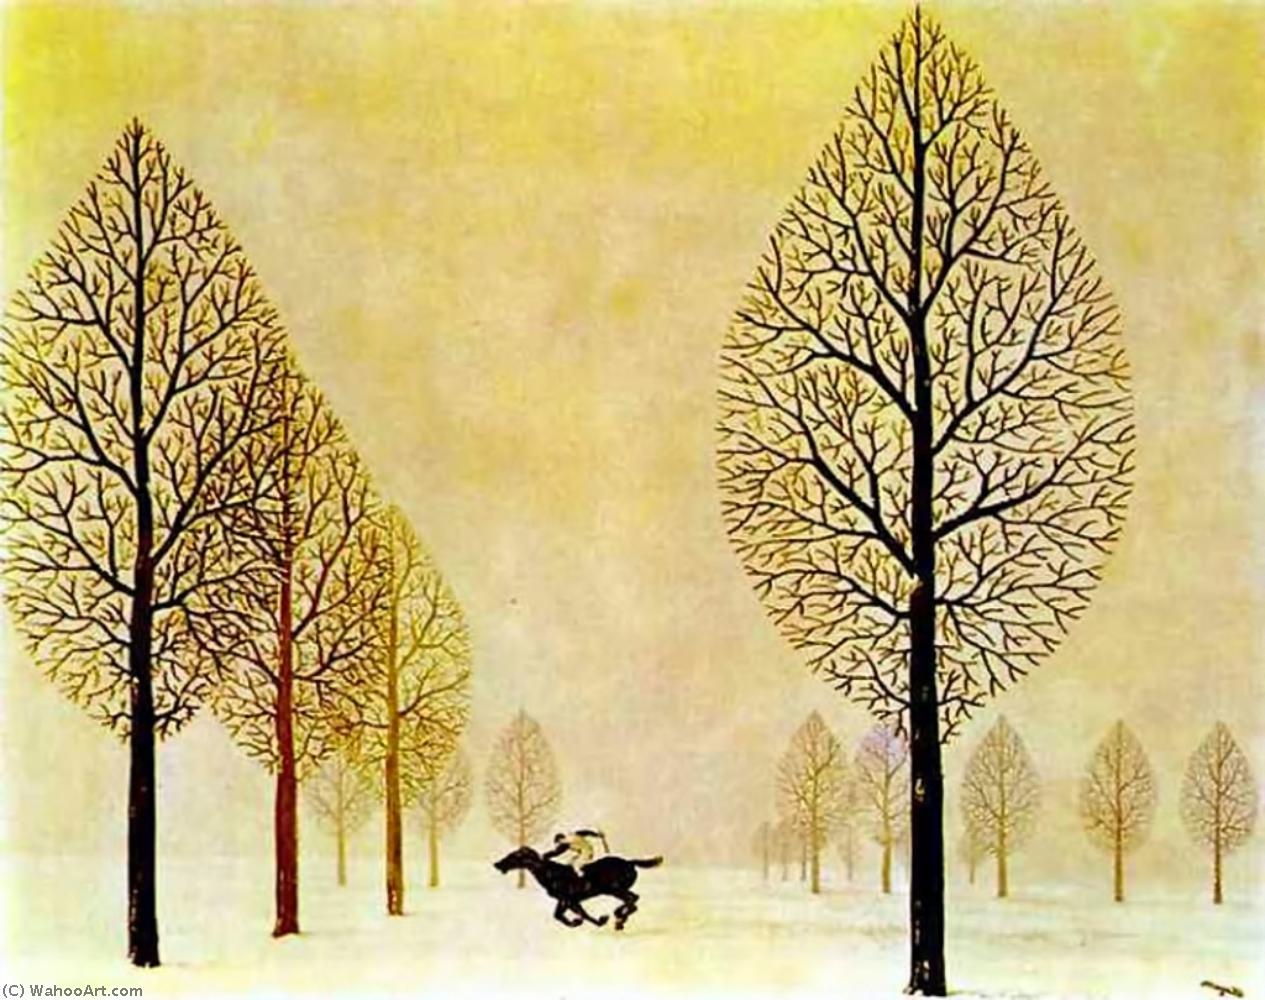 Wikoo.org - موسوعة الفنون الجميلة - اللوحة، العمل الفني Rene Magritte - The lost jockey